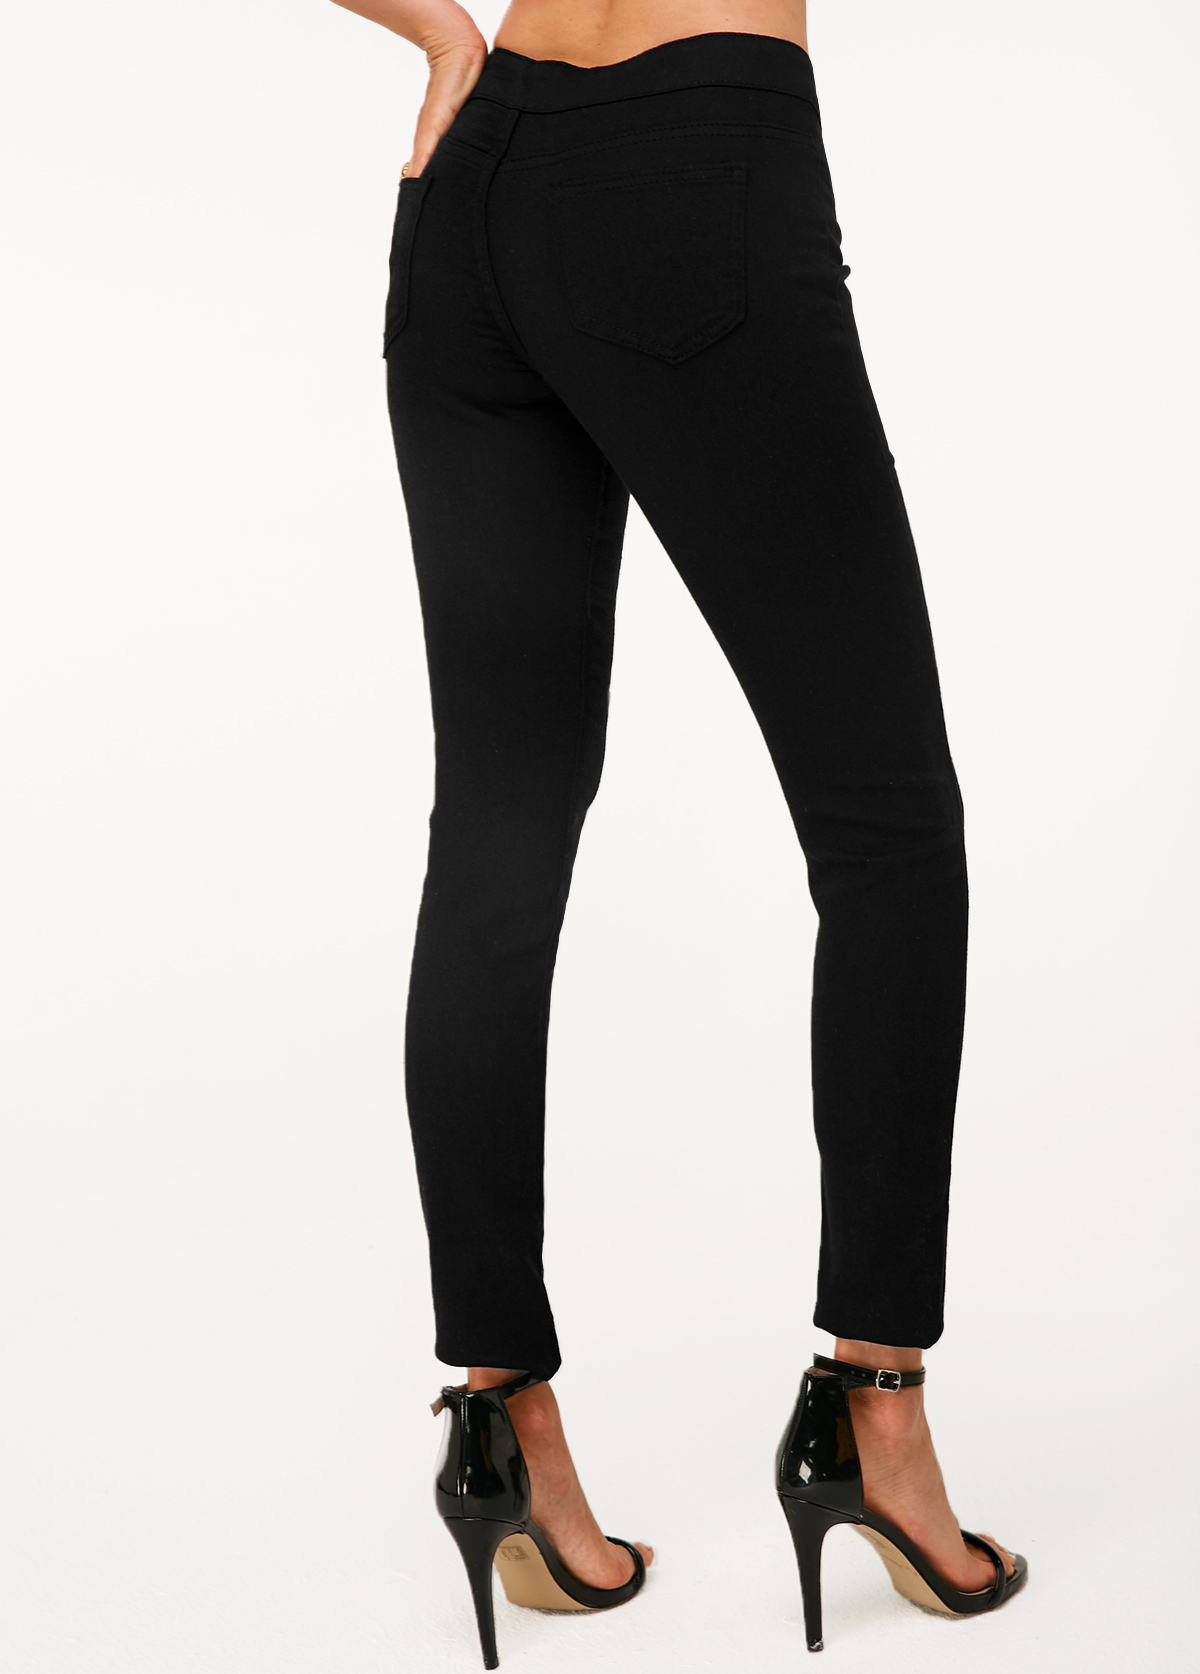 Shredded Black High Waist Skinny Jeans | modlily.com - USD 8.99